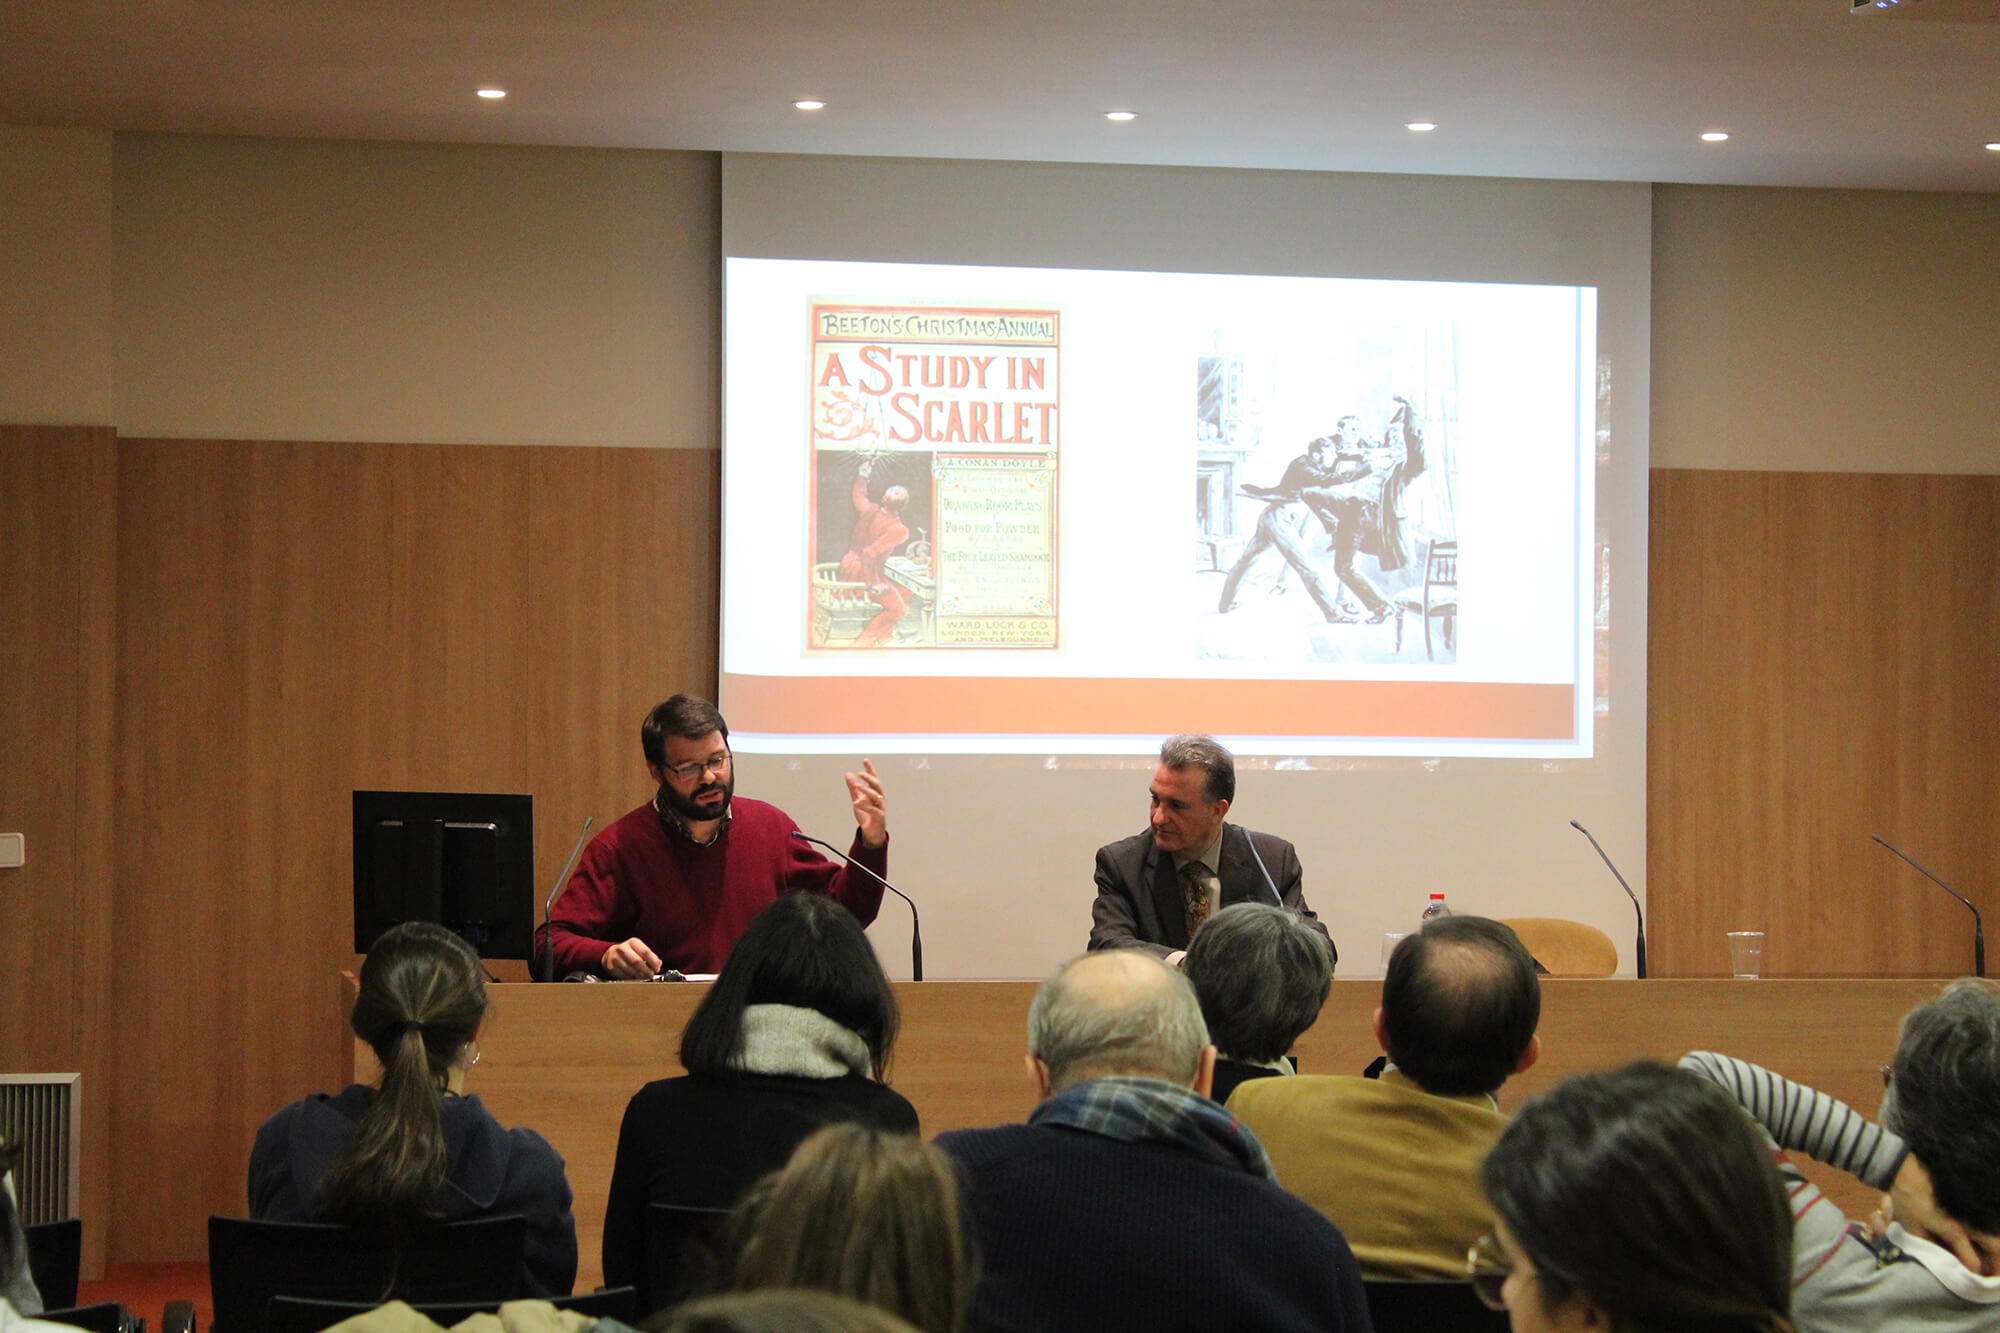 Josep Lluís Martín, doctor en Historia Contemporánea. Conferencia “Sherlock Holmes entre nosotros”. UIC Barcelona, 29 de enero de 2019.